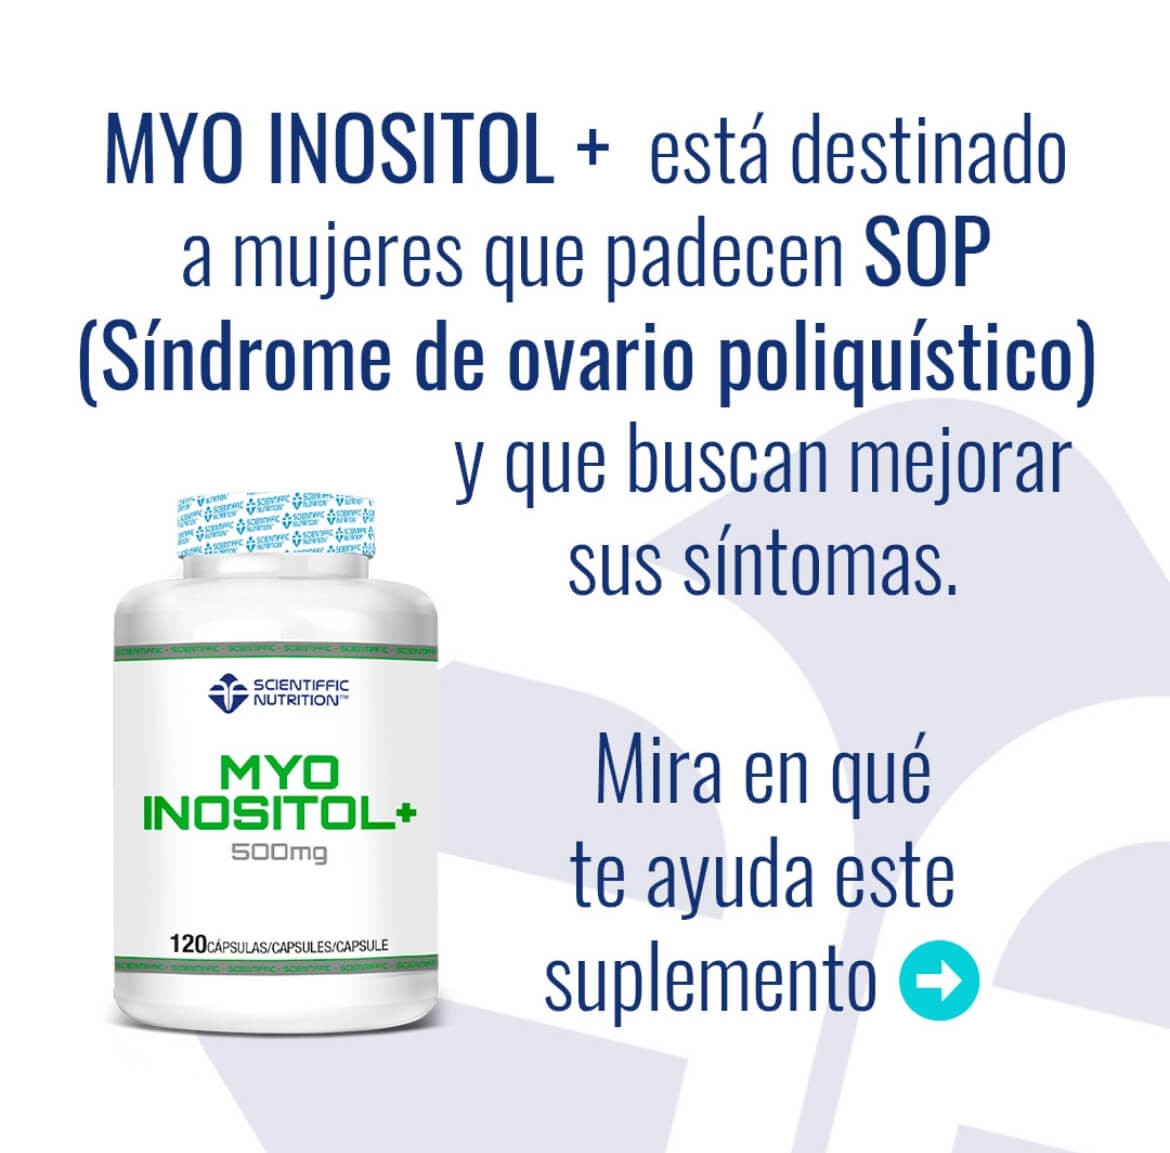 Myo-Inositol: El Suplemento Deportivo que Impulsa tu Rendimiento y Bienestar